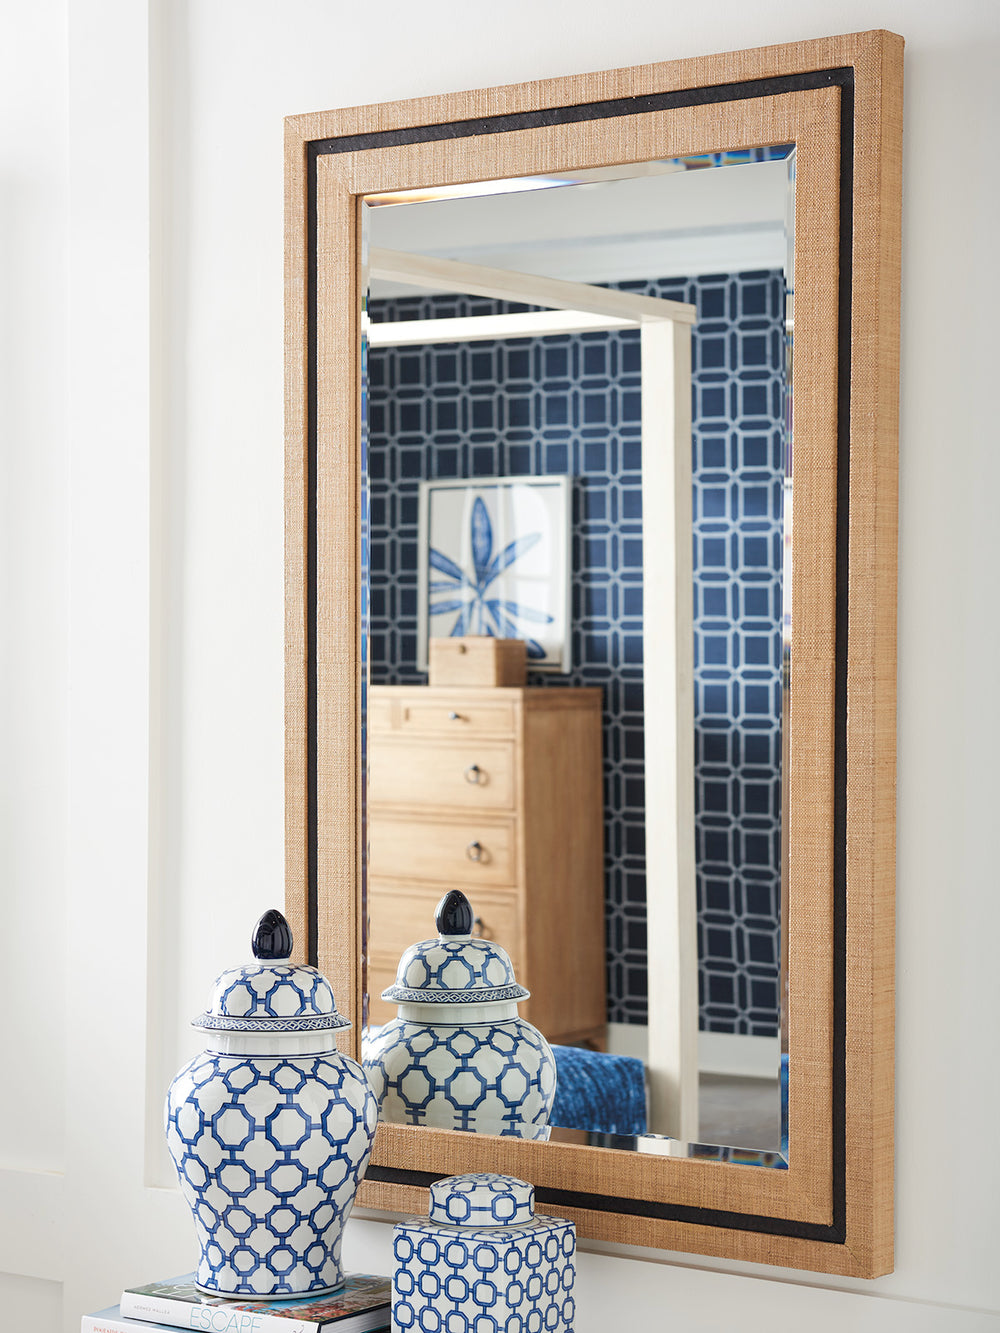 American Home Furniture | Barclay Butera  - Newport La Costa Rectangular Raffia Mirror